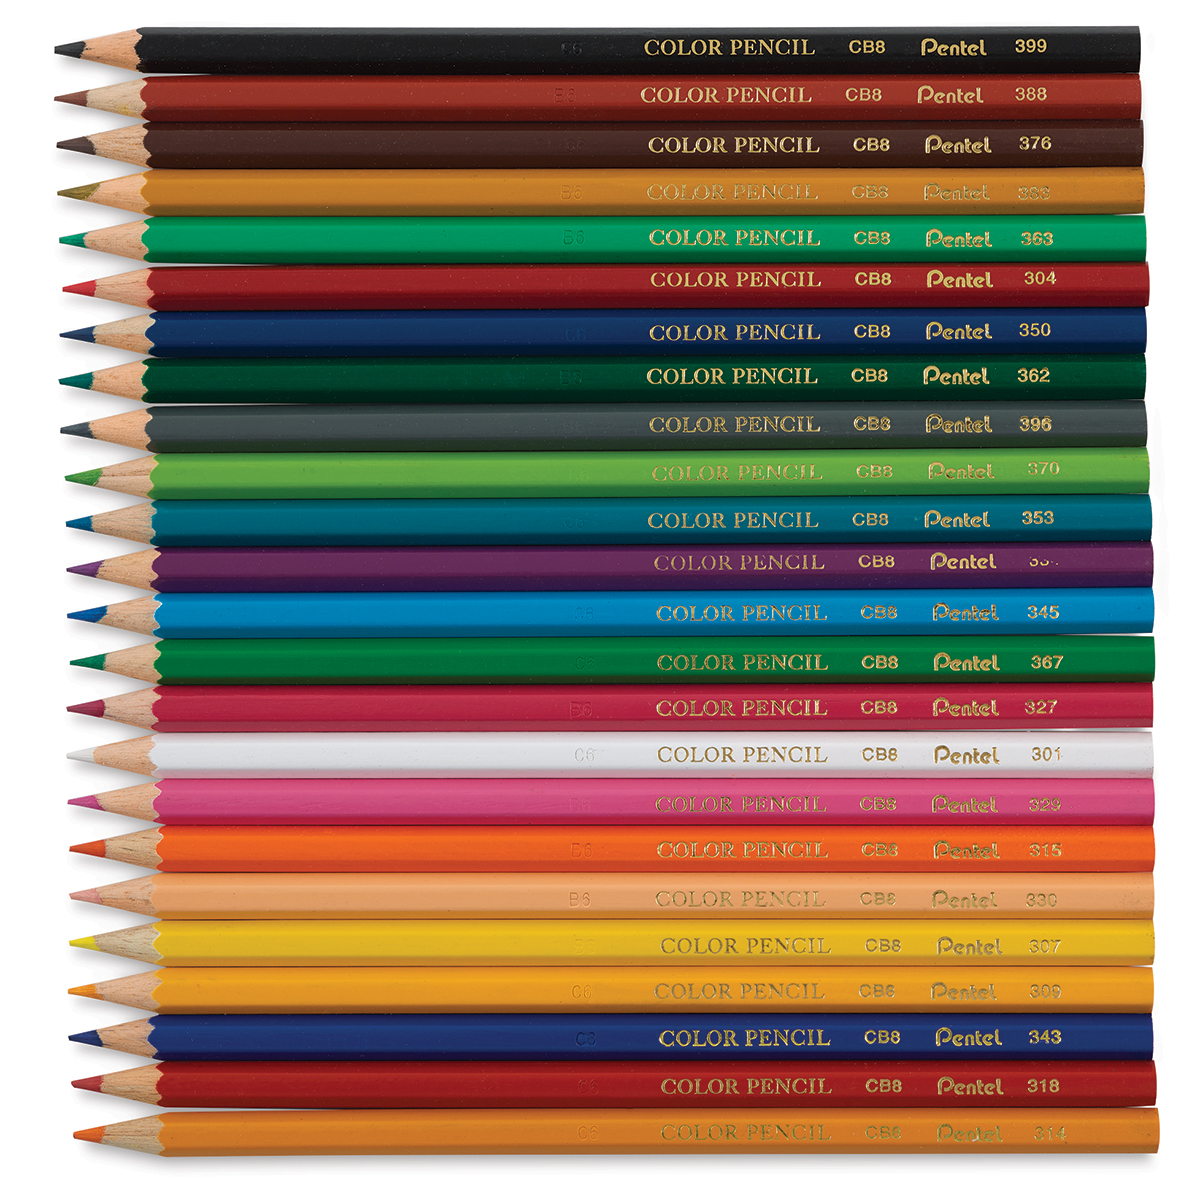 Pentel Arts Watercolor Colored Pencils